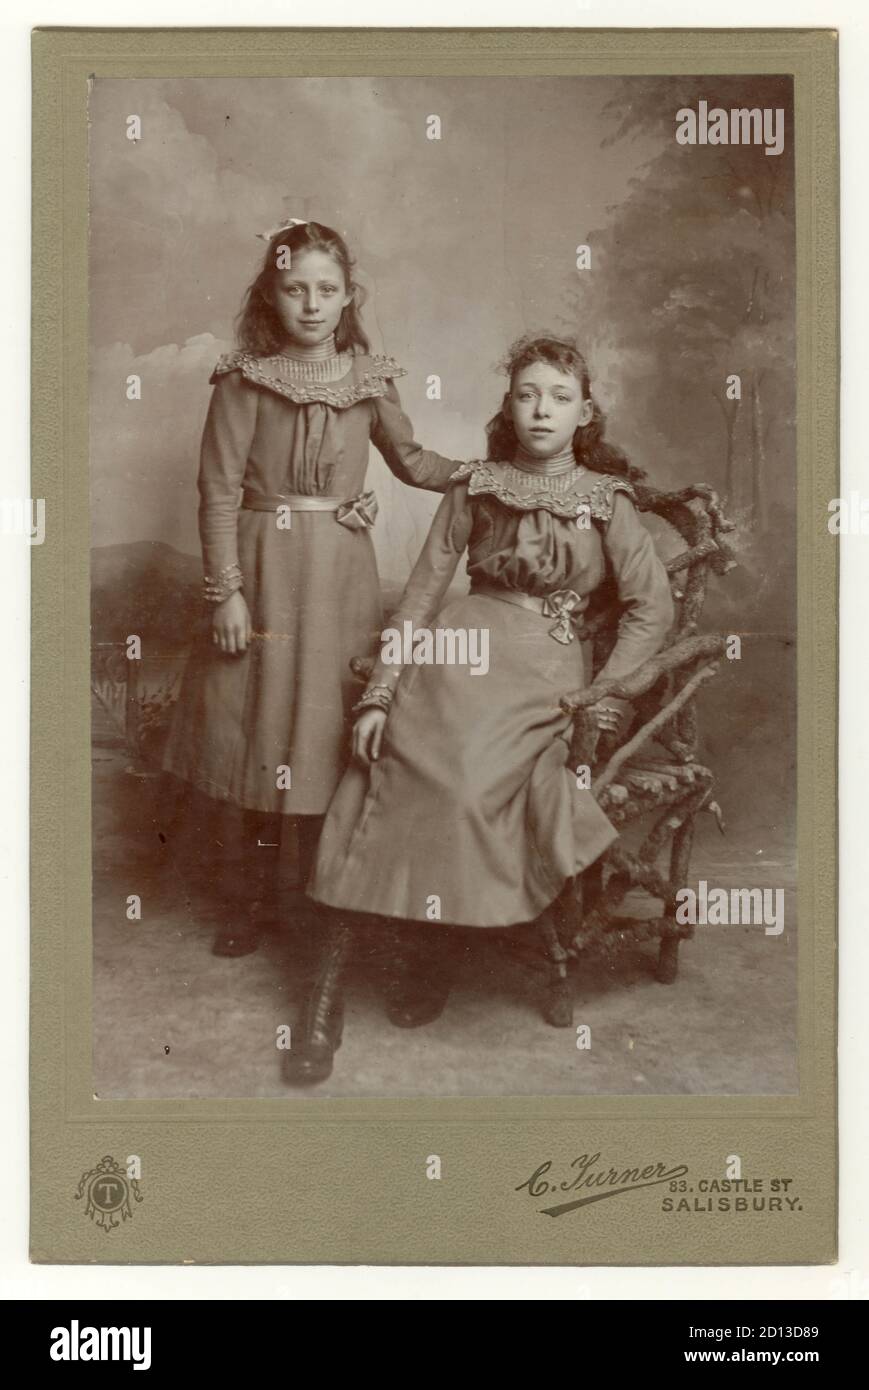 Fotografia di gabinetto ritratto di due graziose ragazze edoardiane, ragazza edoardiana, probabilmente sorelle - dal 1890 ai primi anni '1900, Salisbury, Wiltshire, Inghilterra, Regno Unito Foto Stock